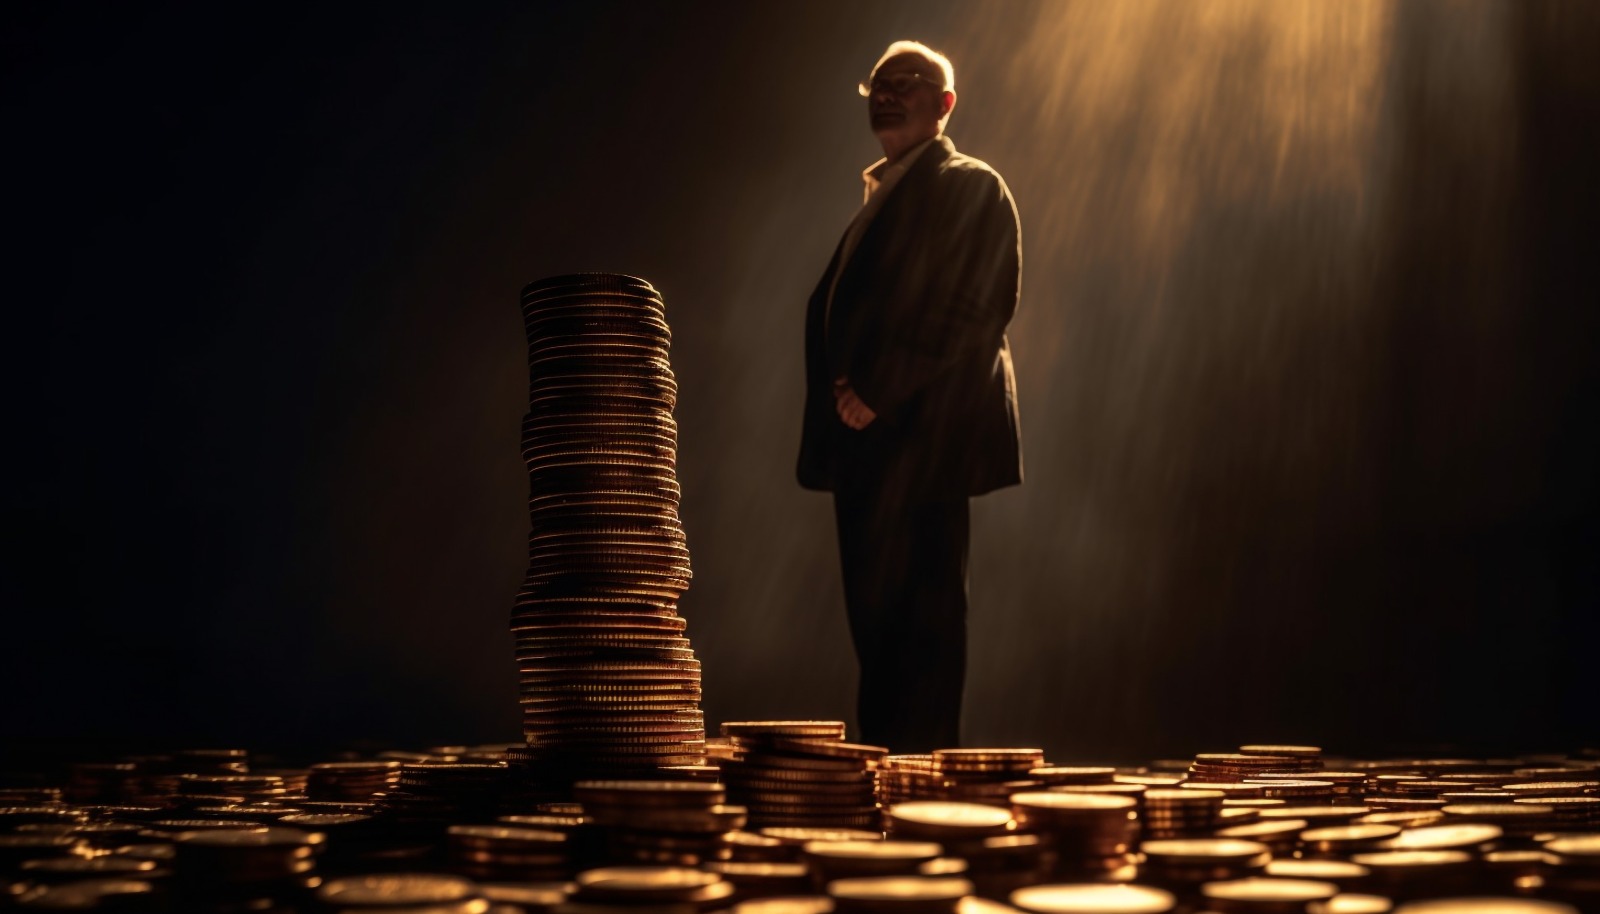 Uma pessoa em pé ao lado de uma pilha alta de moedas sob uma luz focada, cercada por um mar de moedas no chão escuro.